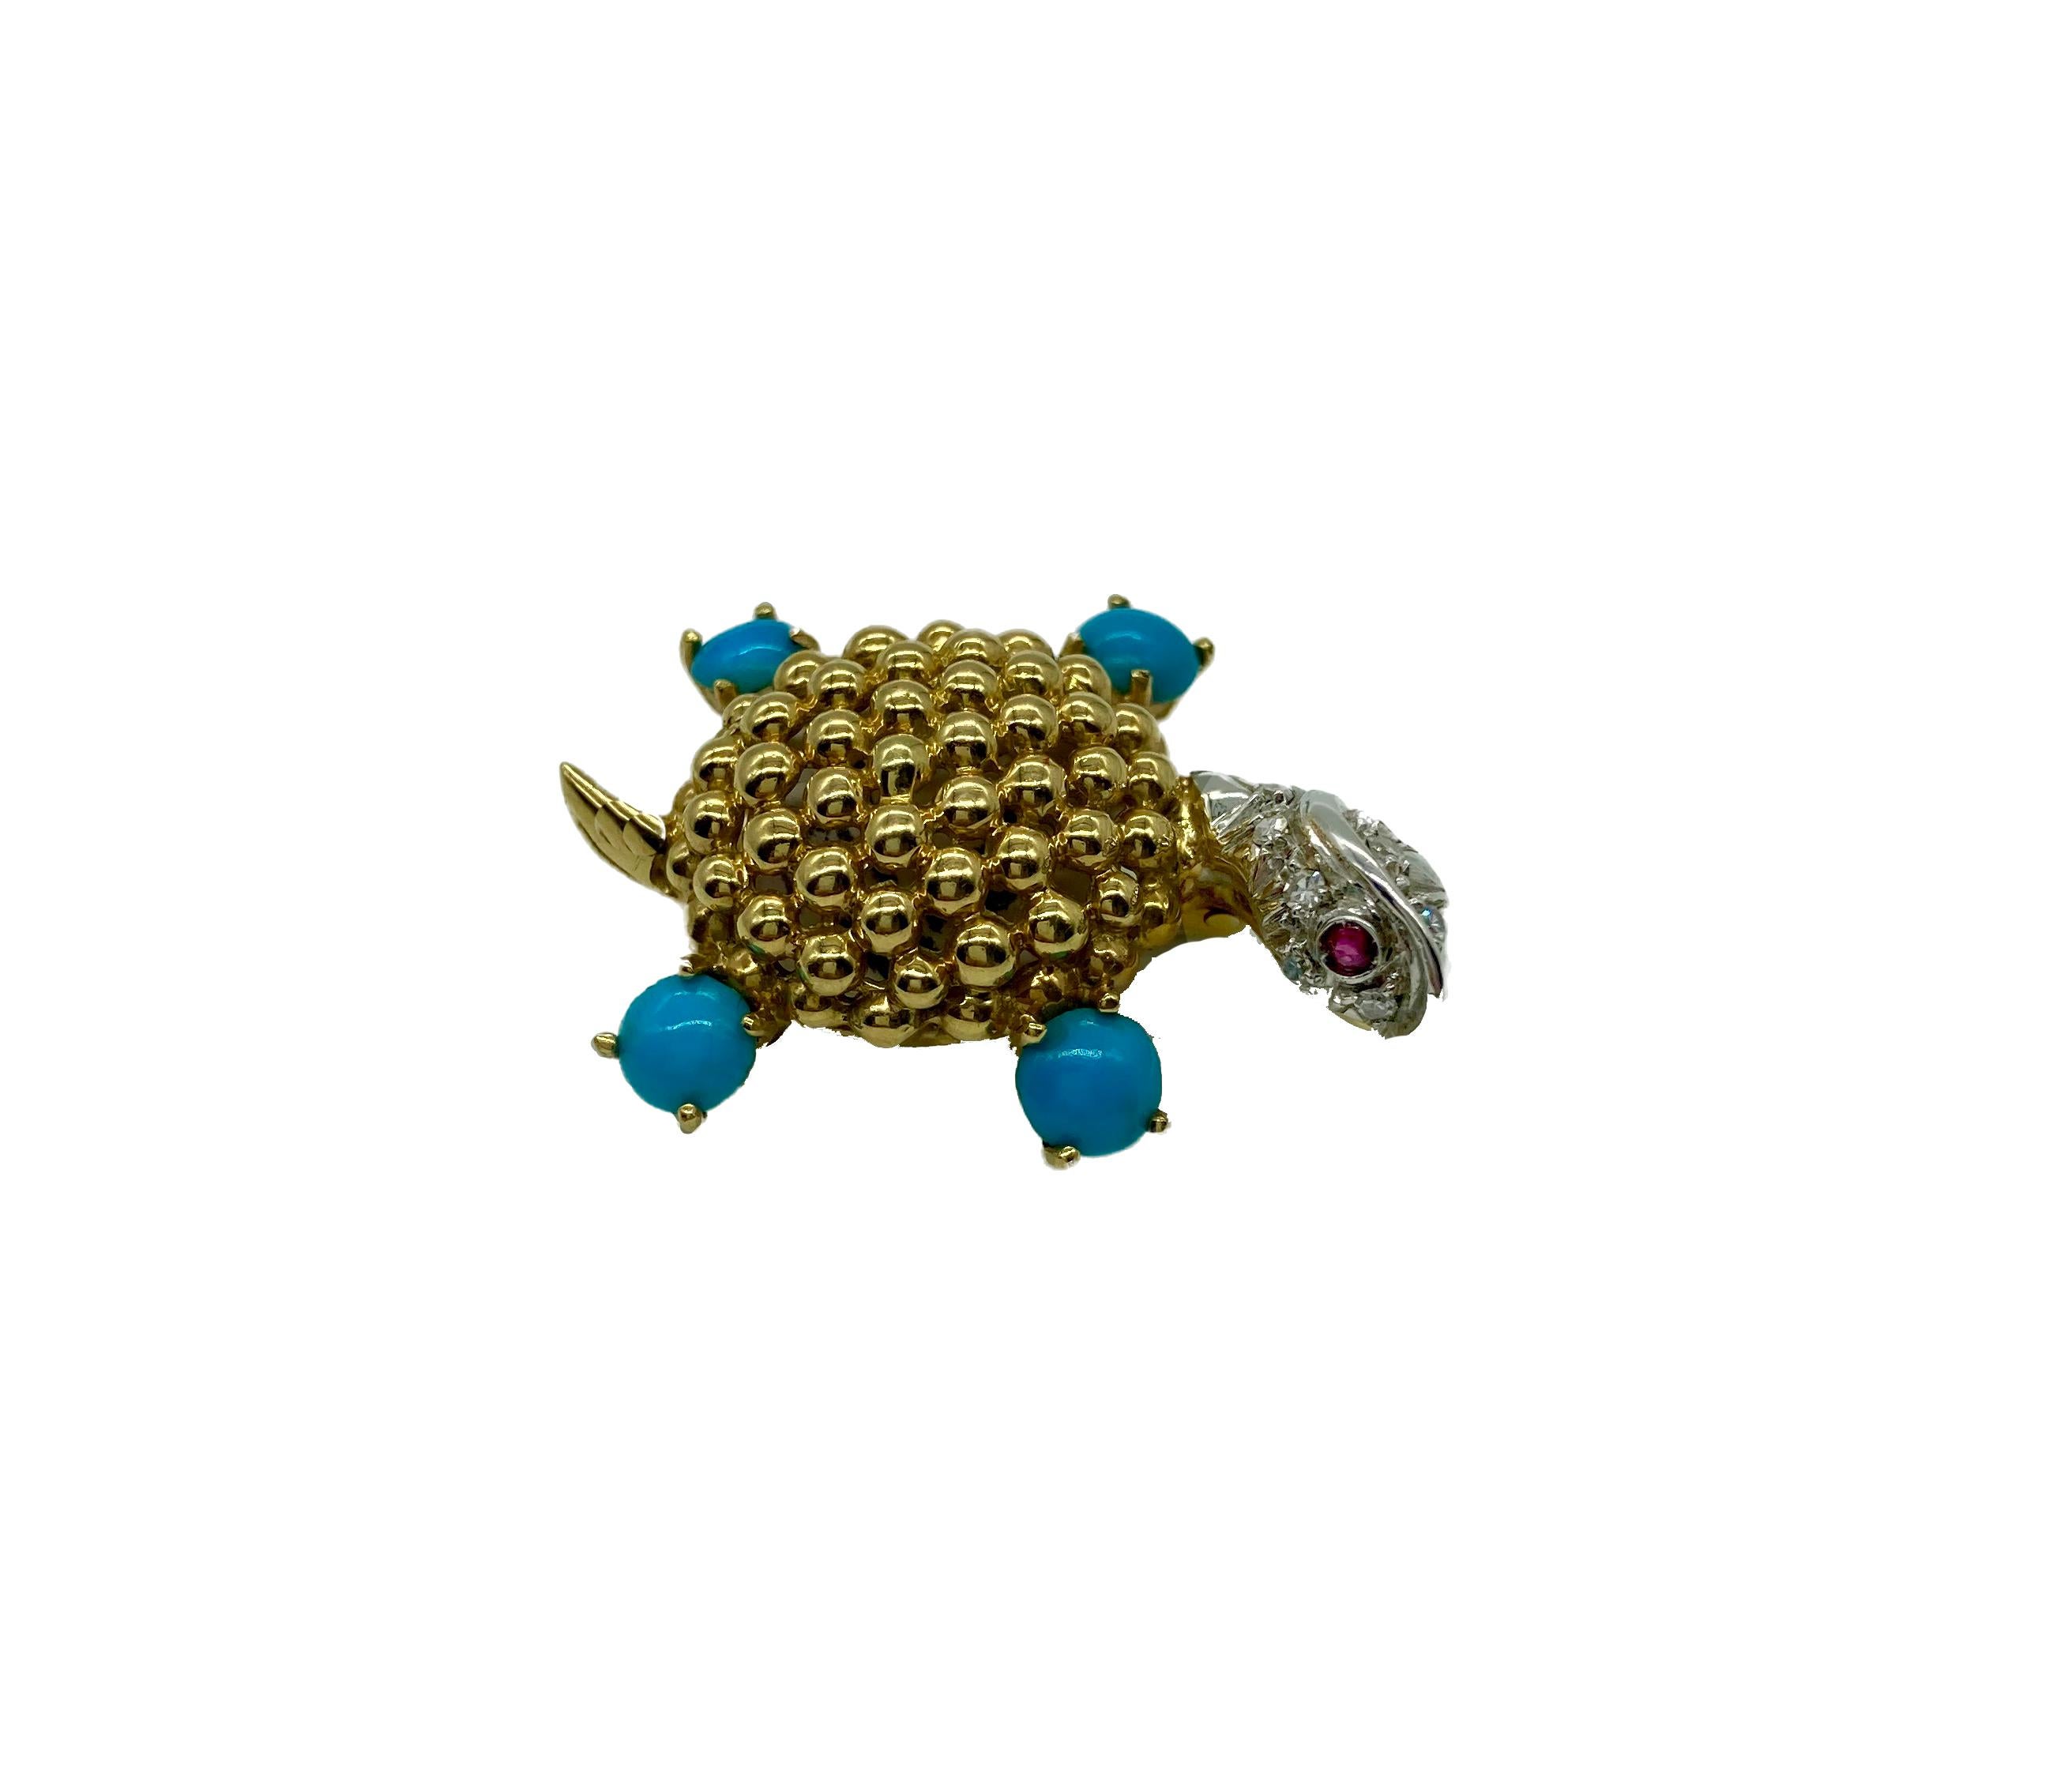 Petite broche tortue en or texturé avec des pattes en turquoise, une tête en diamant et des yeux en rubis. Vers 1970.